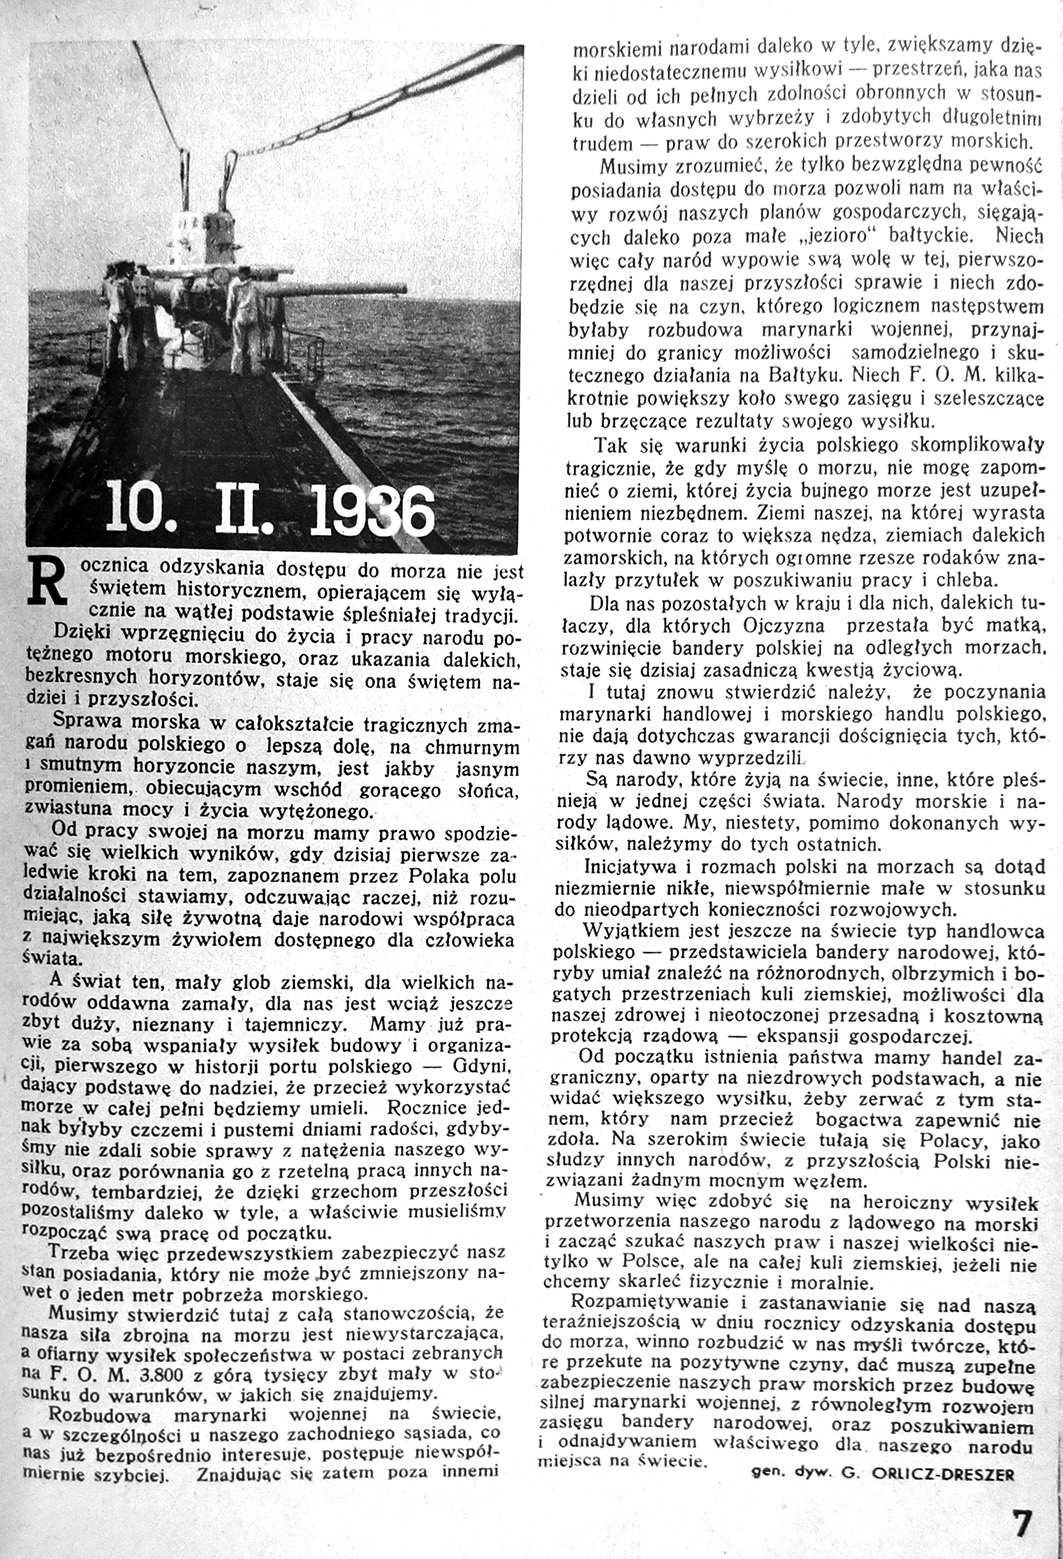 10. II. 1936